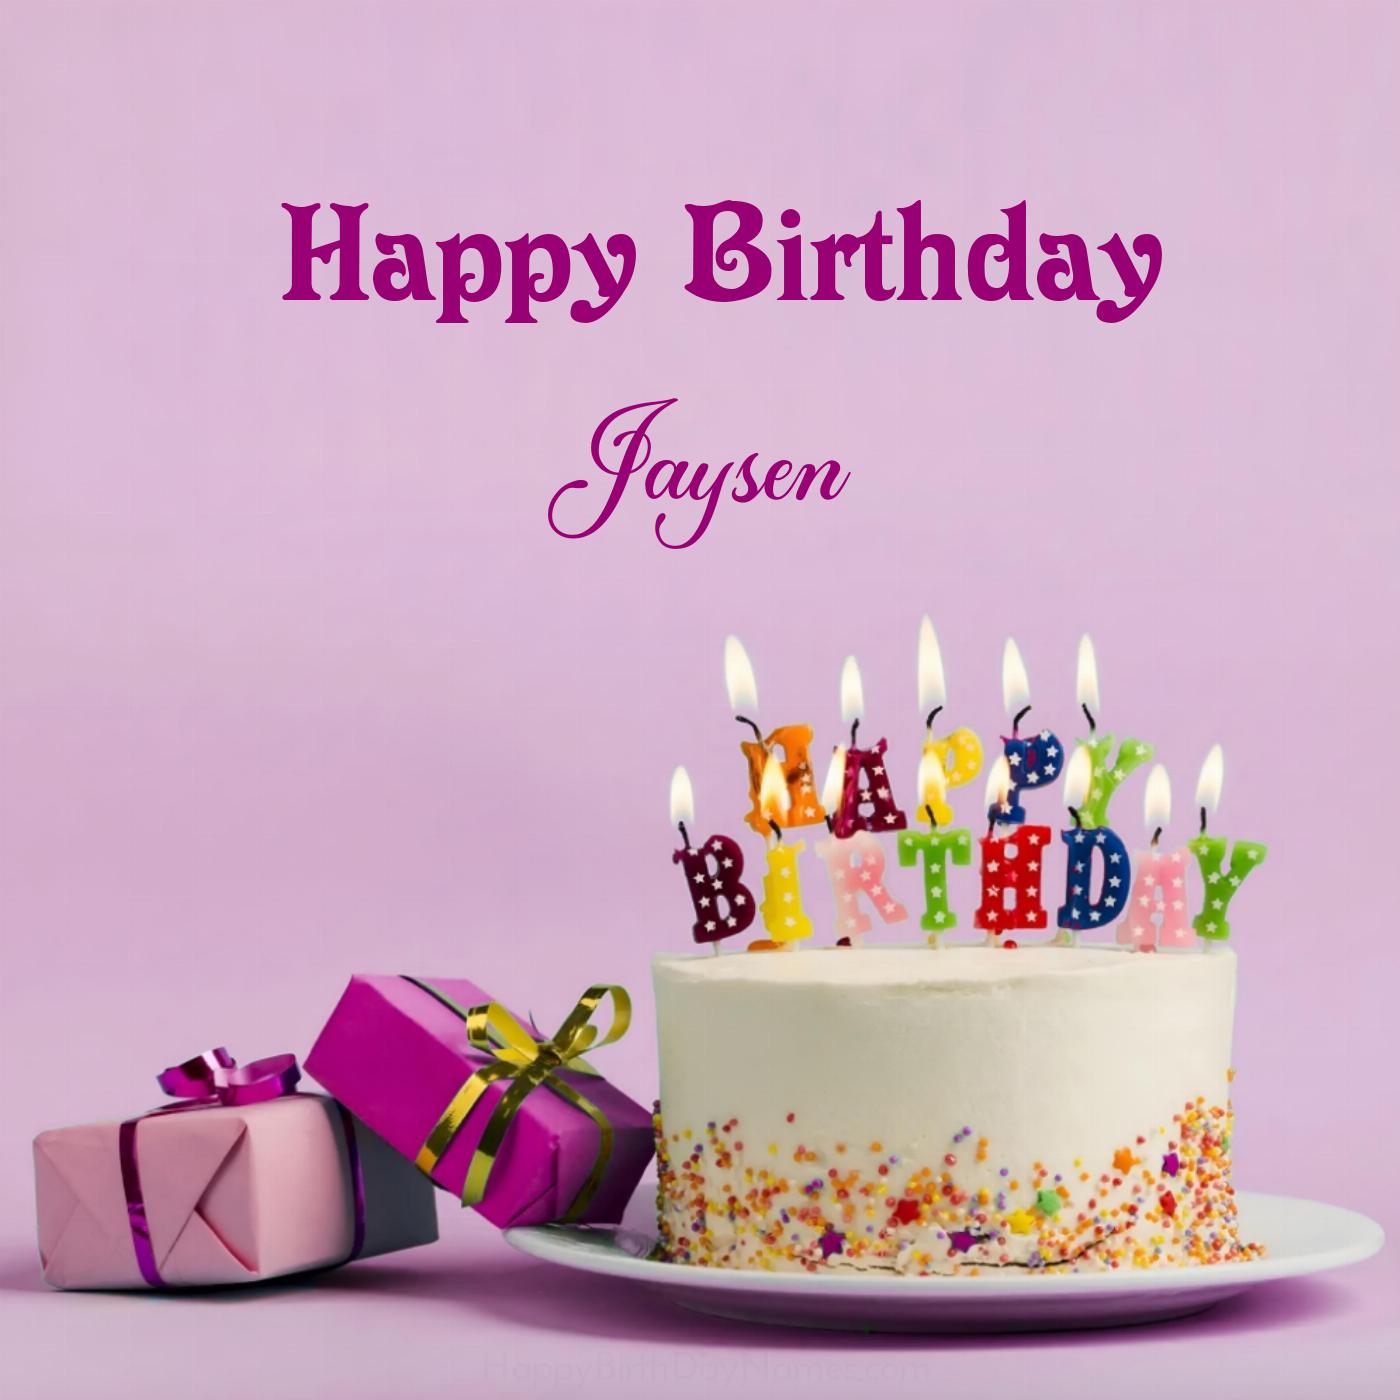 Happy Birthday Jaysen Cake Gifts Card